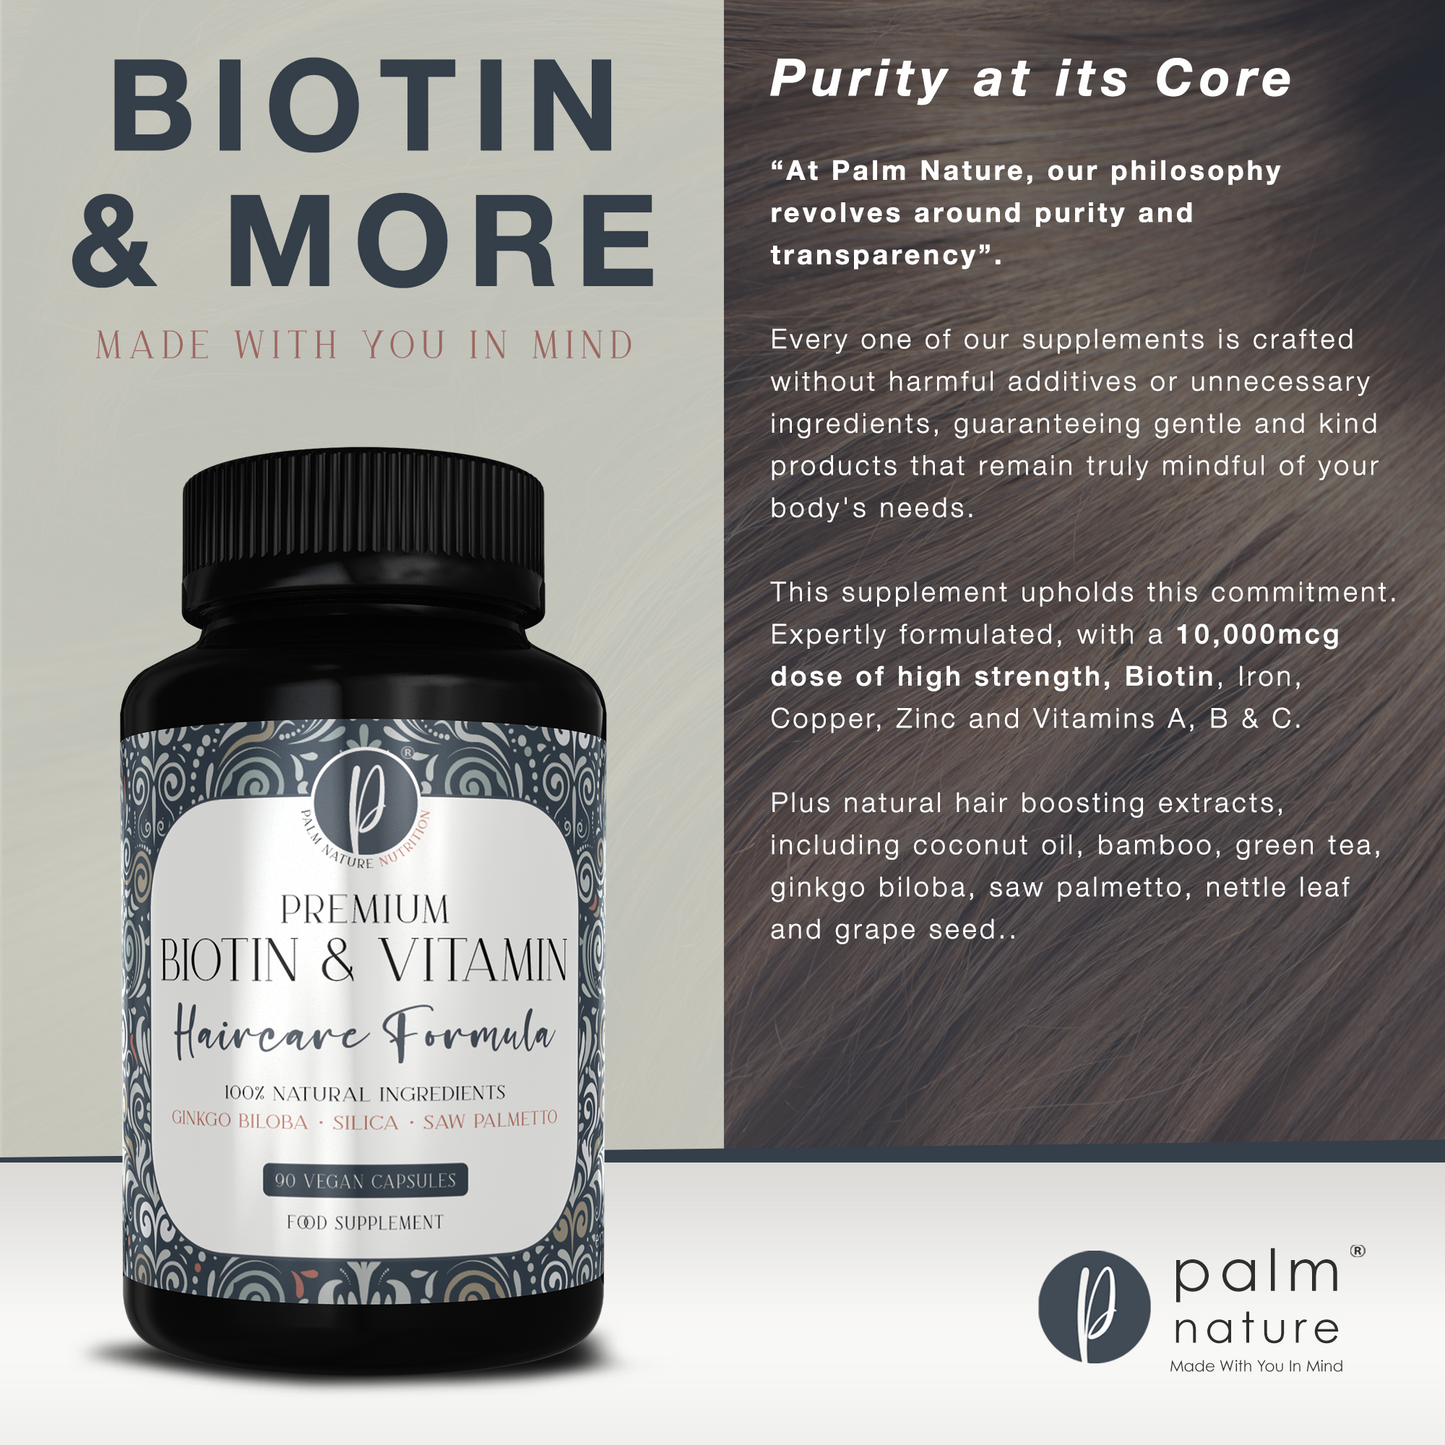 Premium-Biotin- und Vitamin-Haarpflegeformel